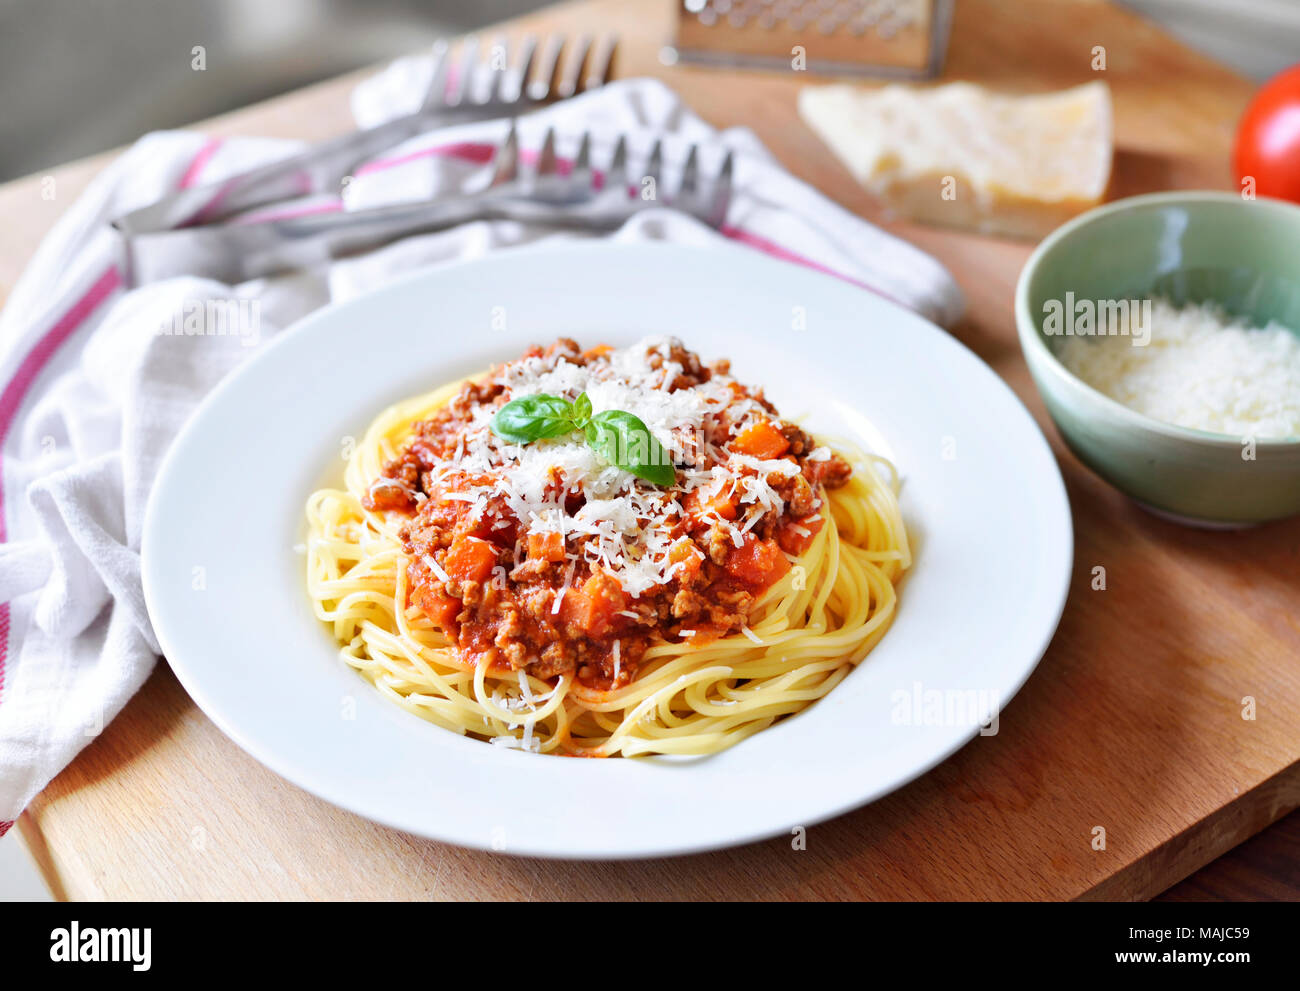 Deliciosa pasta italiana, comida, los espaguetis a la boloñesa sobre una placa blanca. Plato de pasta, comida italiana tradicional con queso parmesano, carne picada y hojas de albahaca. Foto de stock